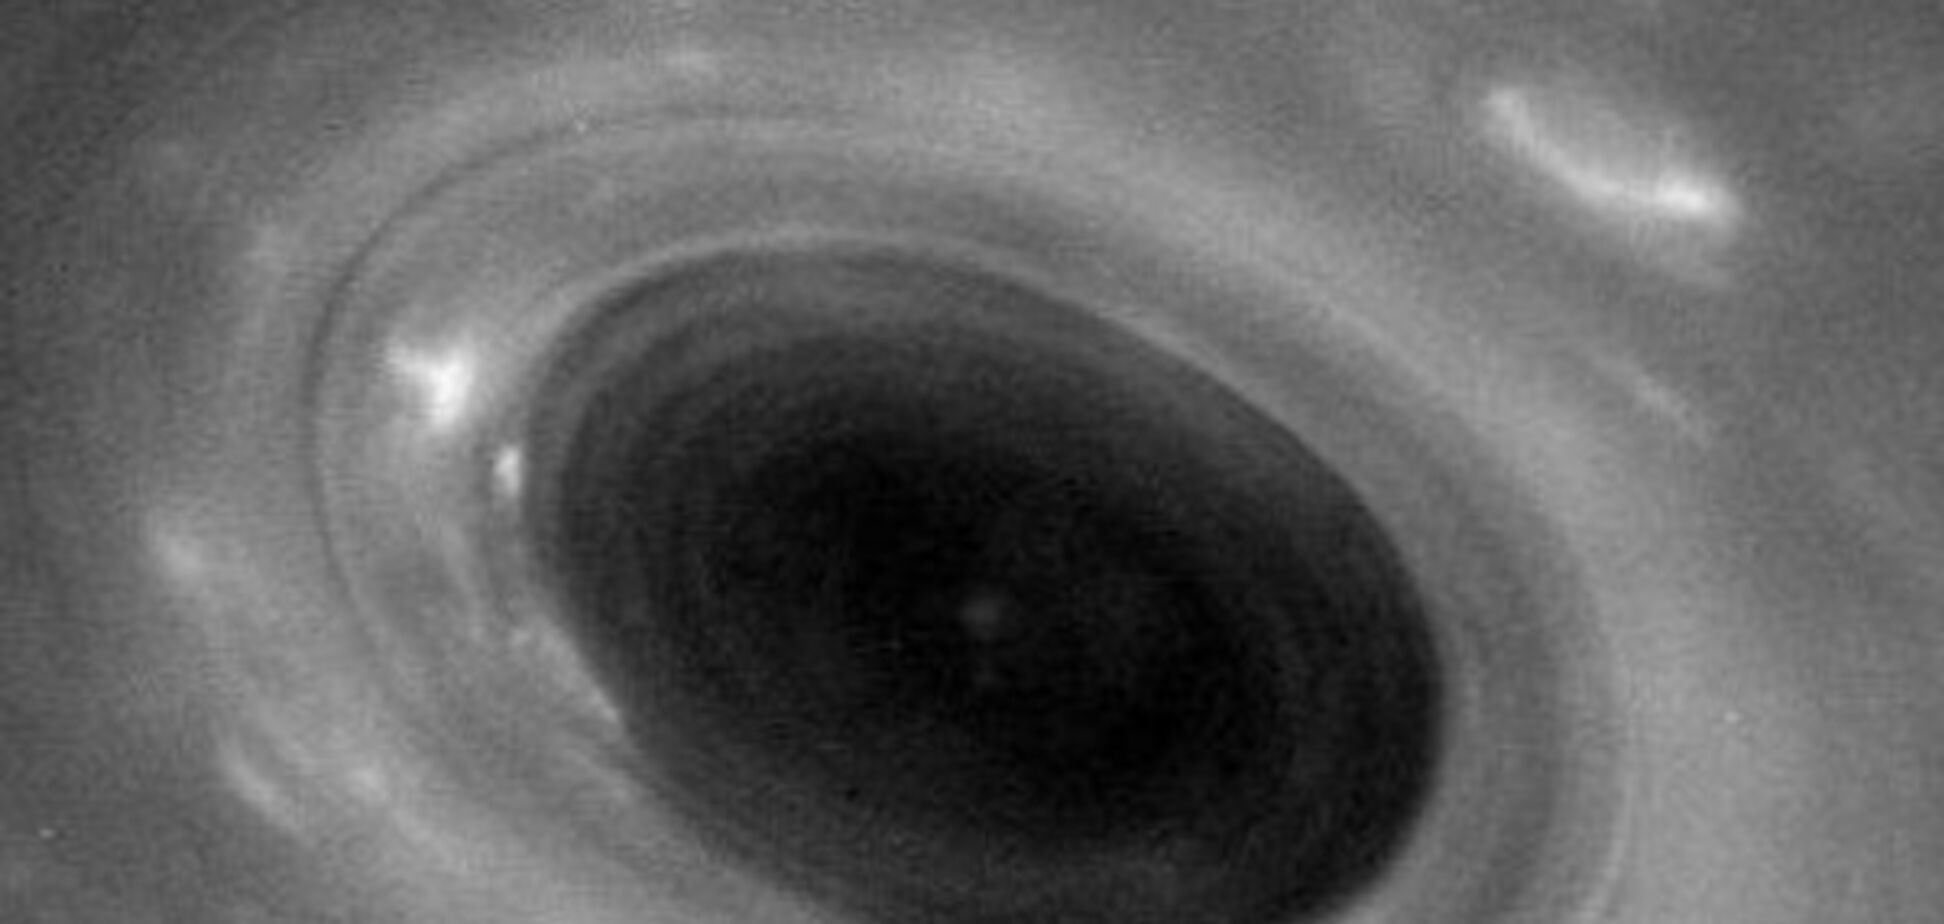 Зонд 'Кассини' нырнул в кольца Сатурна: опубликованы фото